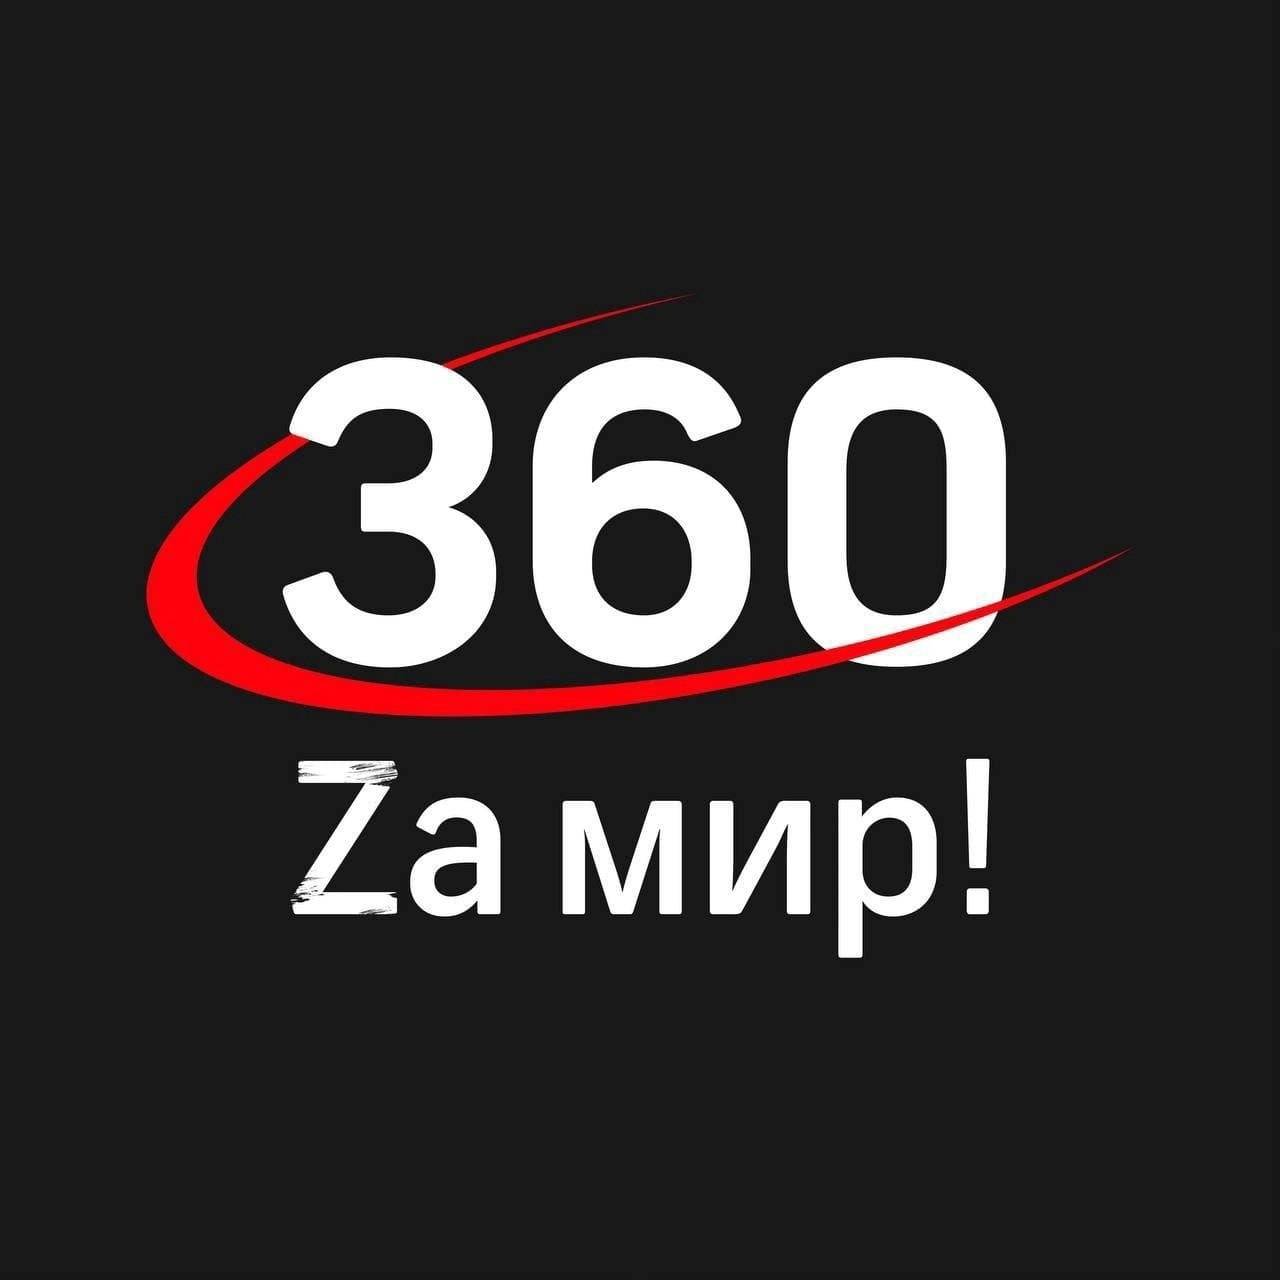 Телеканал 360 и Михаил Онуфриенко